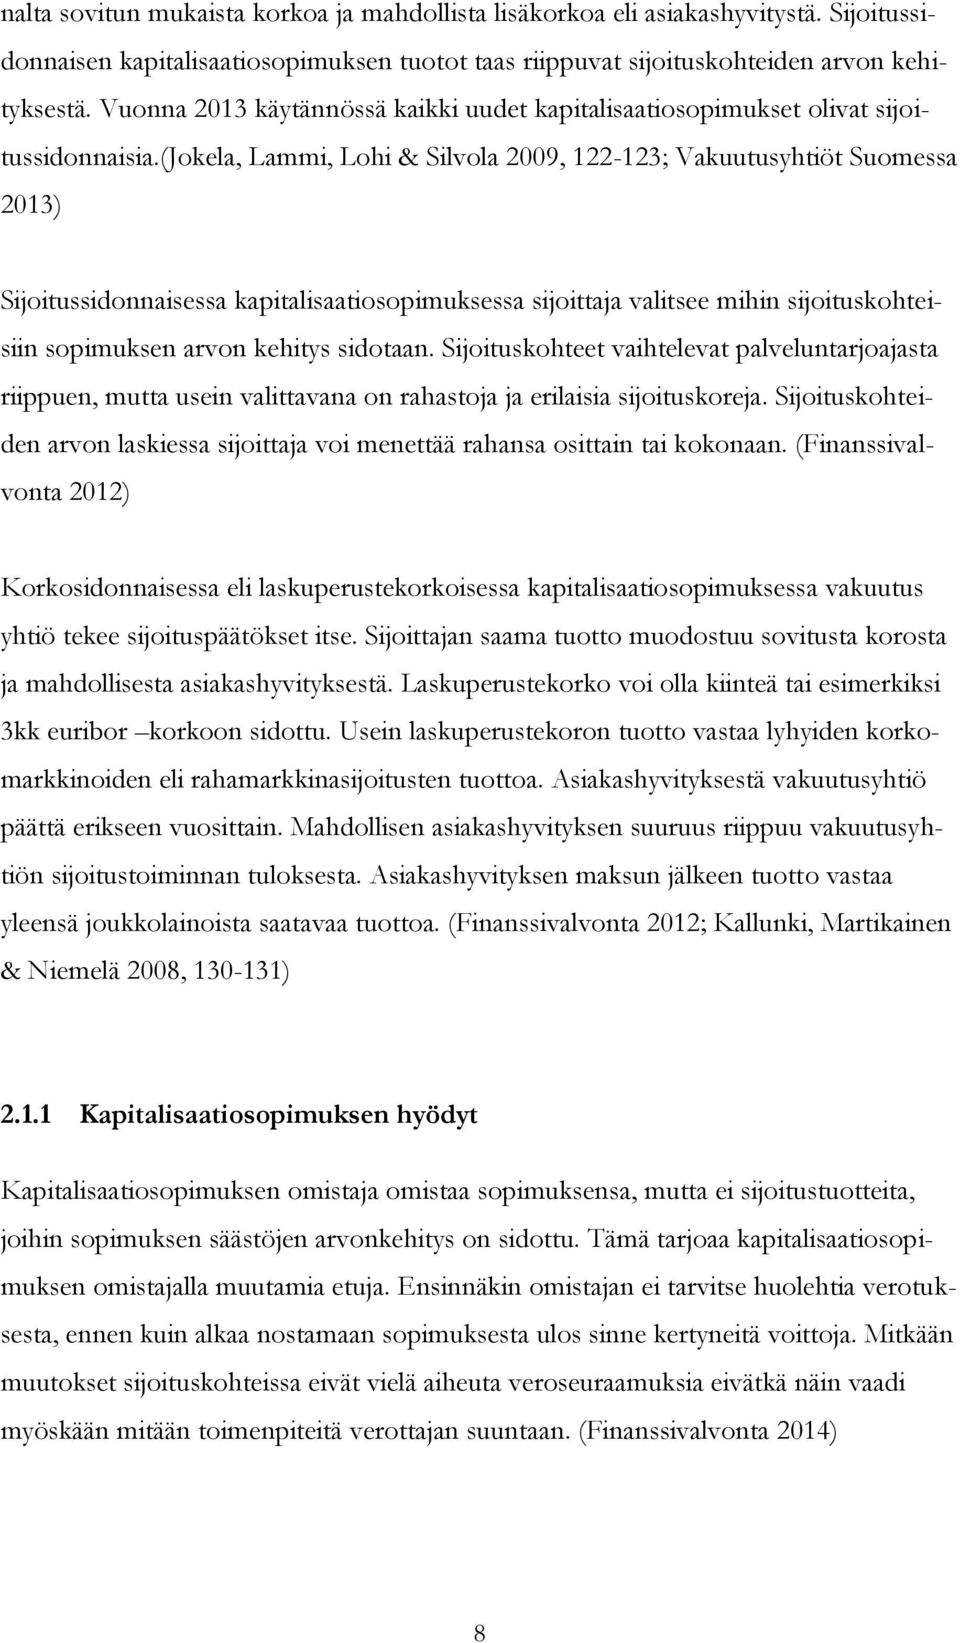 (jokela, Lammi, Lohi & Silvola 2009, 122-123; Vakuutusyhtiöt Suomessa 2013) Sijoitussidonnaisessa kapitalisaatiosopimuksessa sijoittaja valitsee mihin sijoituskohteisiin sopimuksen arvon kehitys